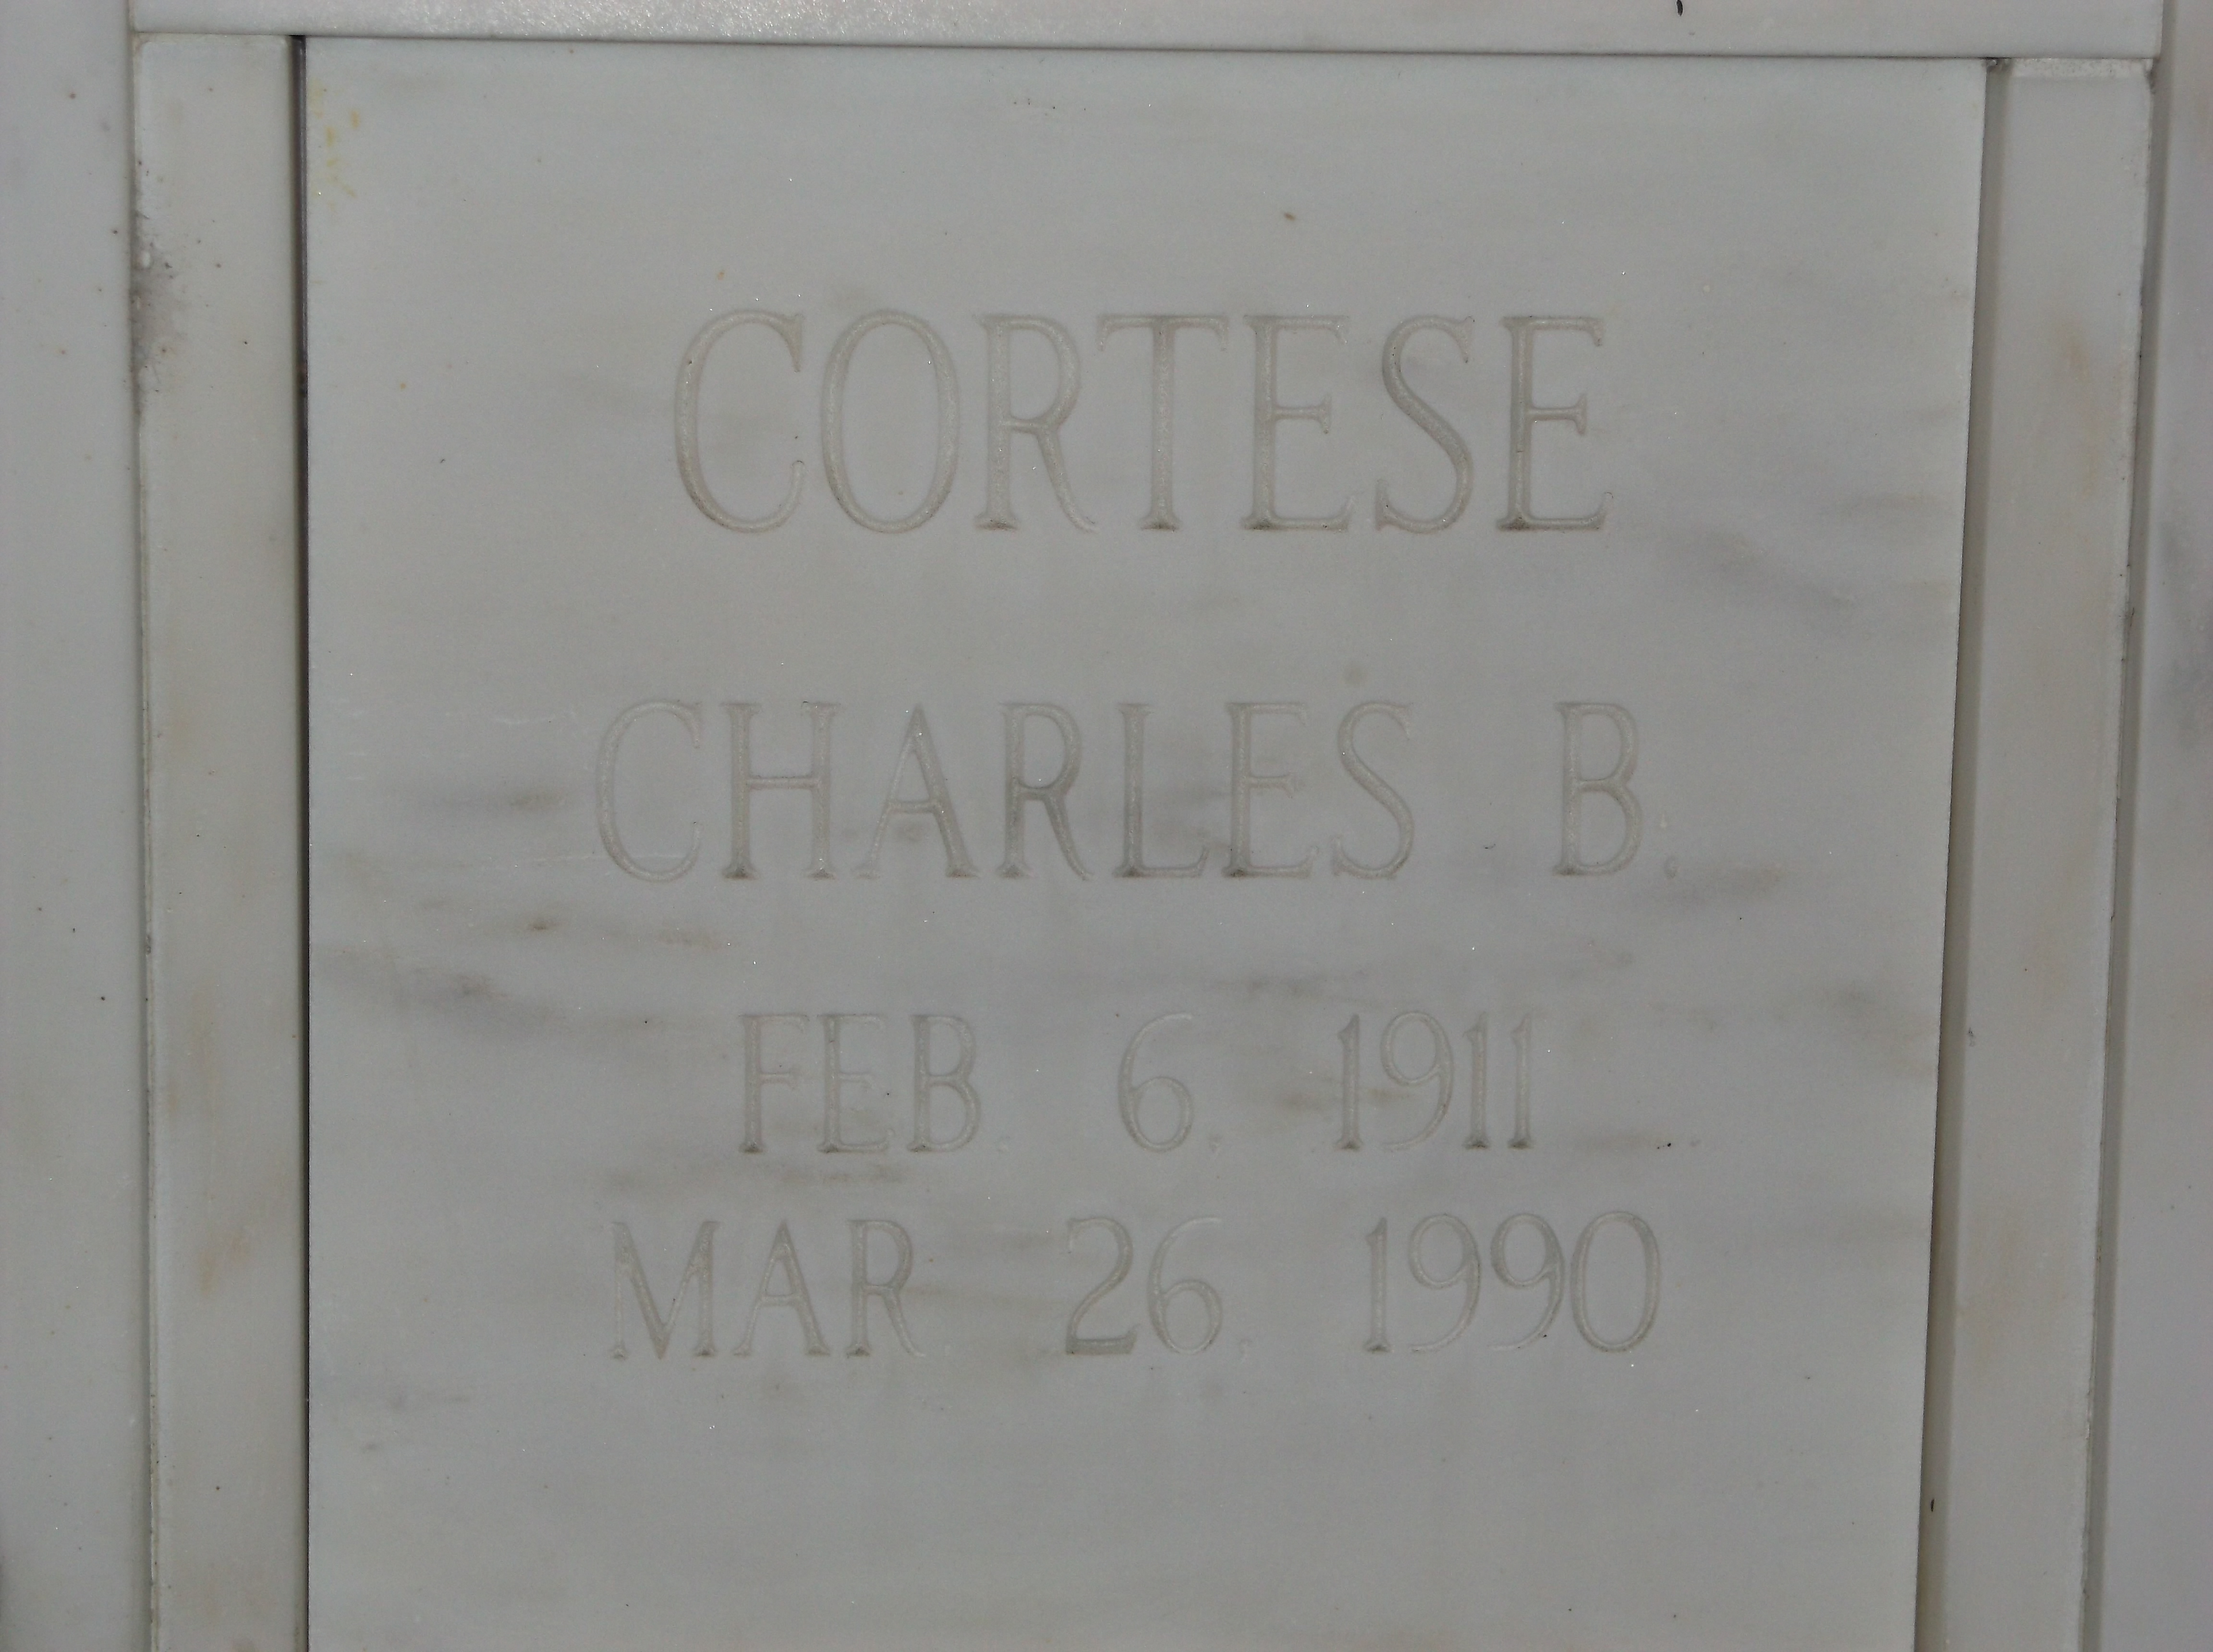 Charles B Cortese